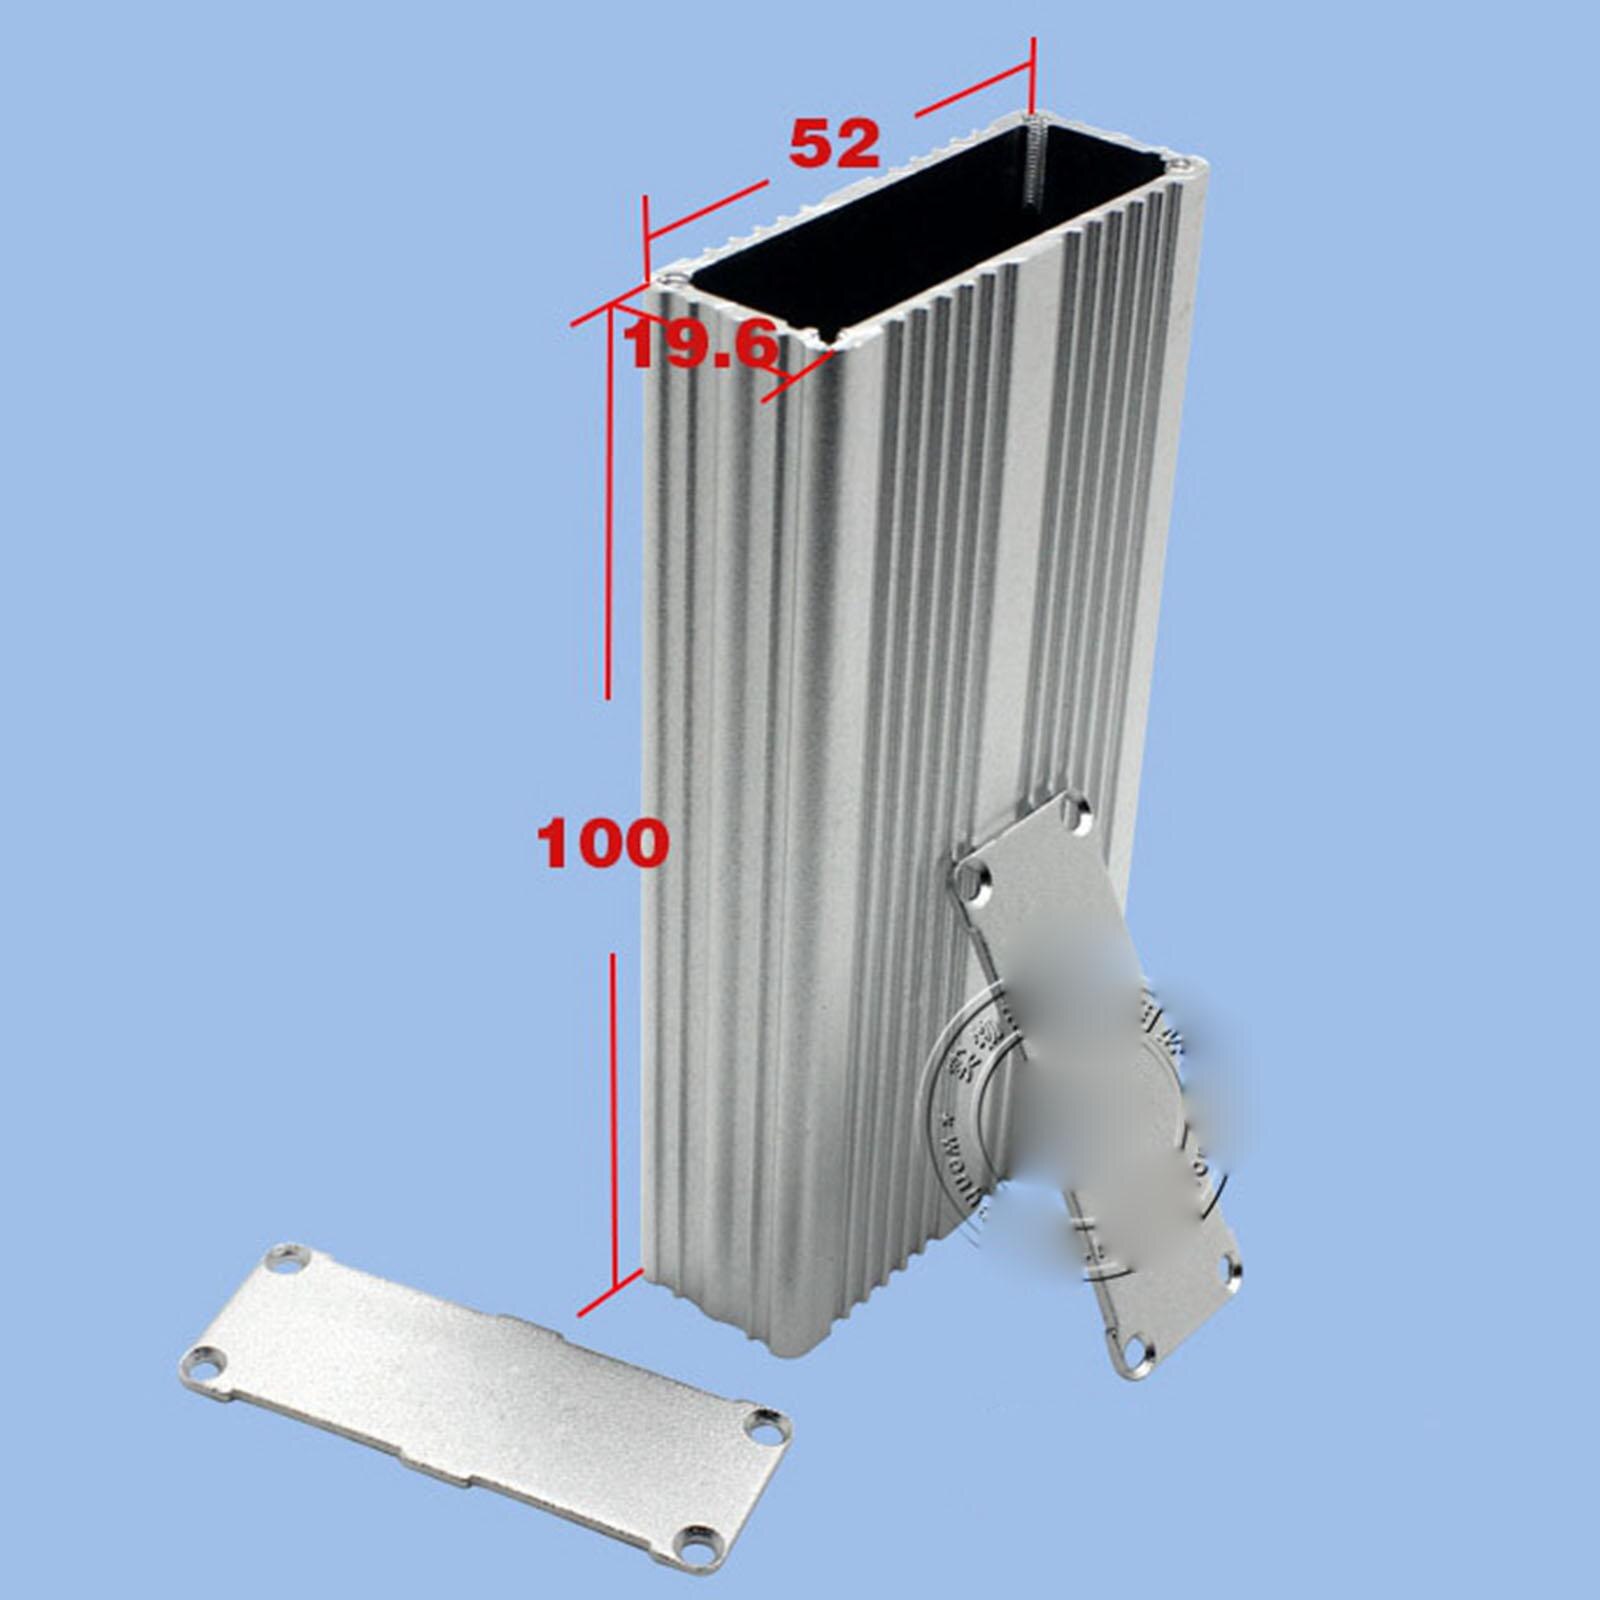 Boîtier en aluminium 100x52x19.6mm, coque PCB, boîtier de refroidissement, Type unique